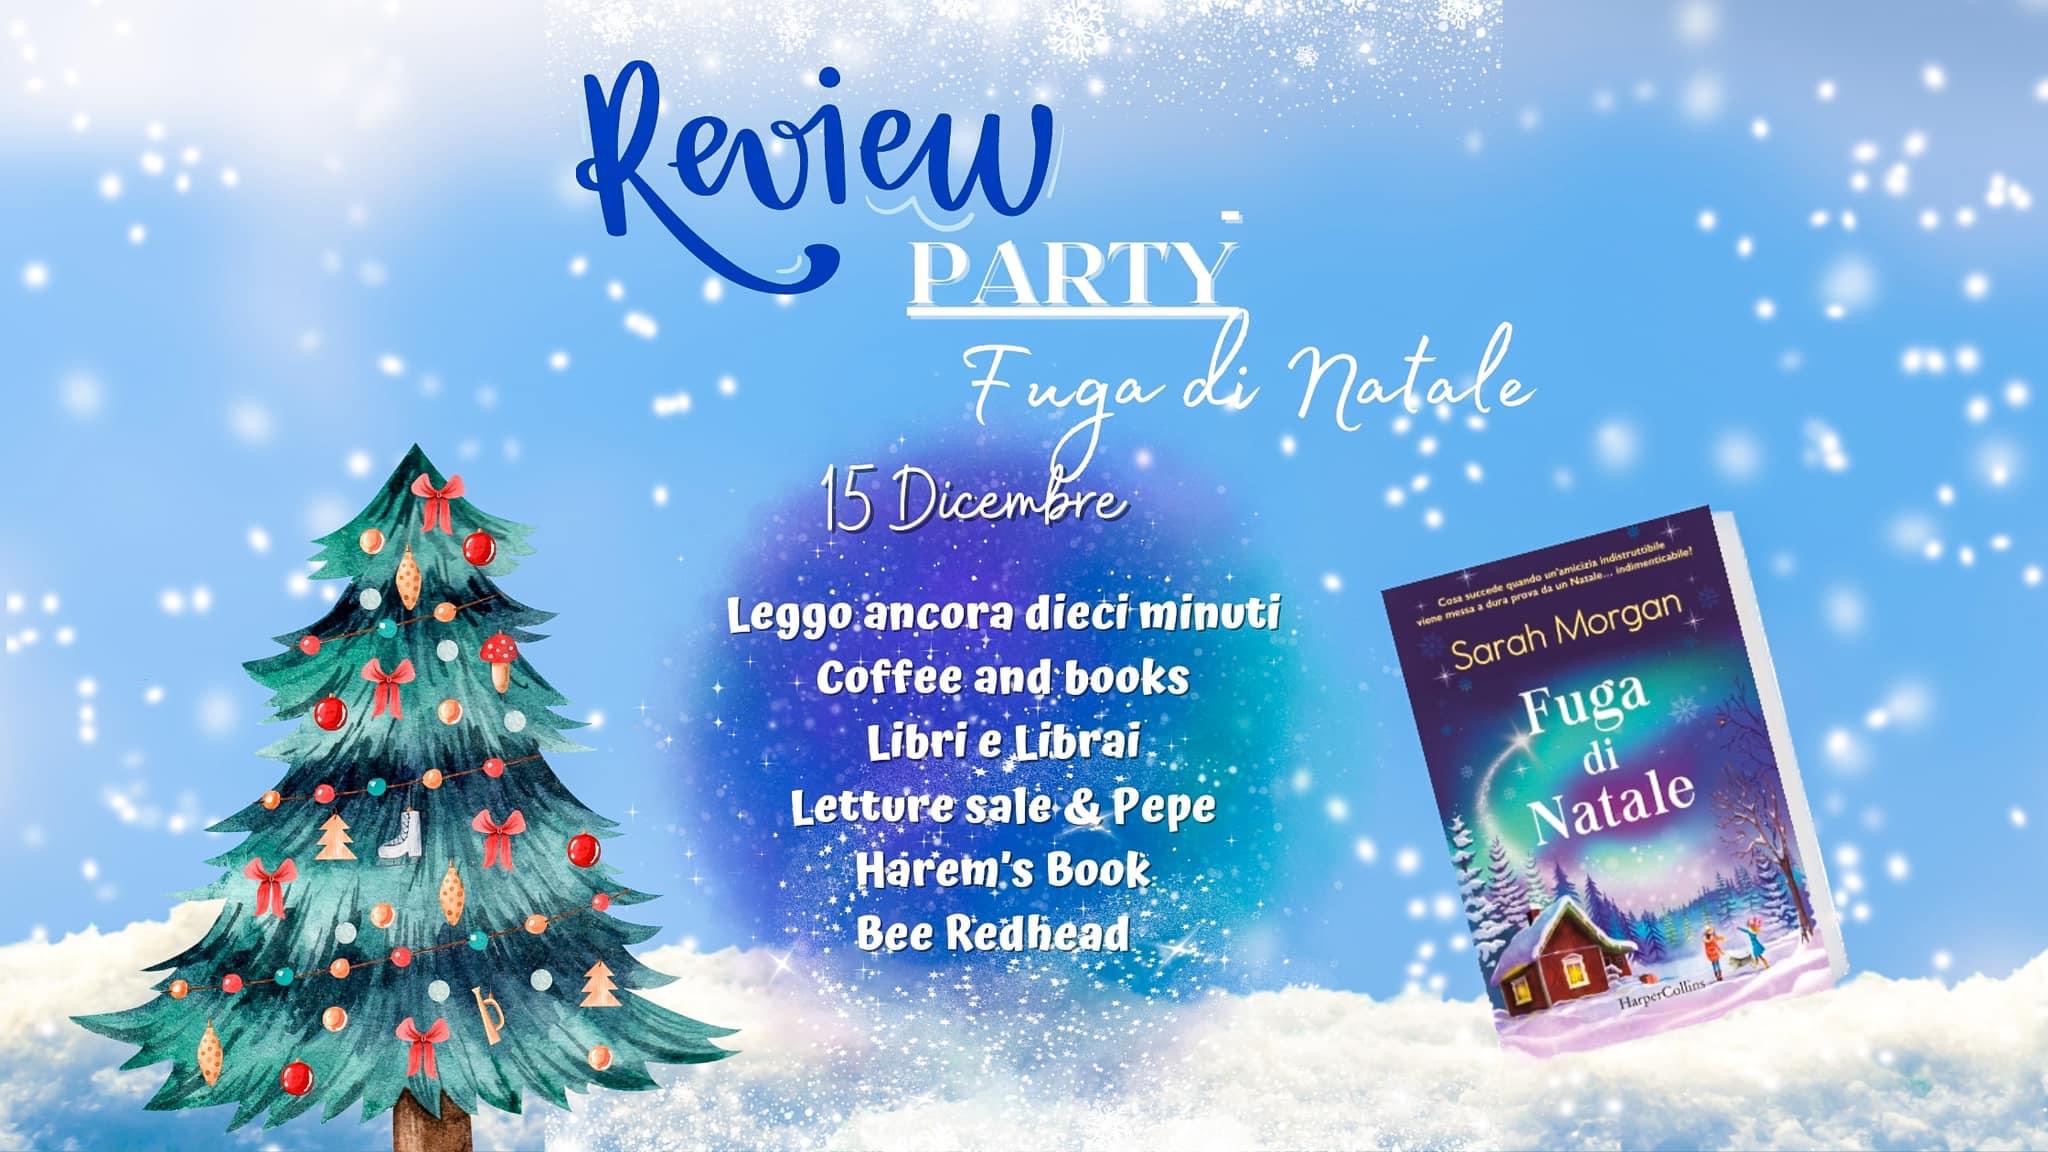 Review Party “Fuga di Natale” di Sarah Morgan